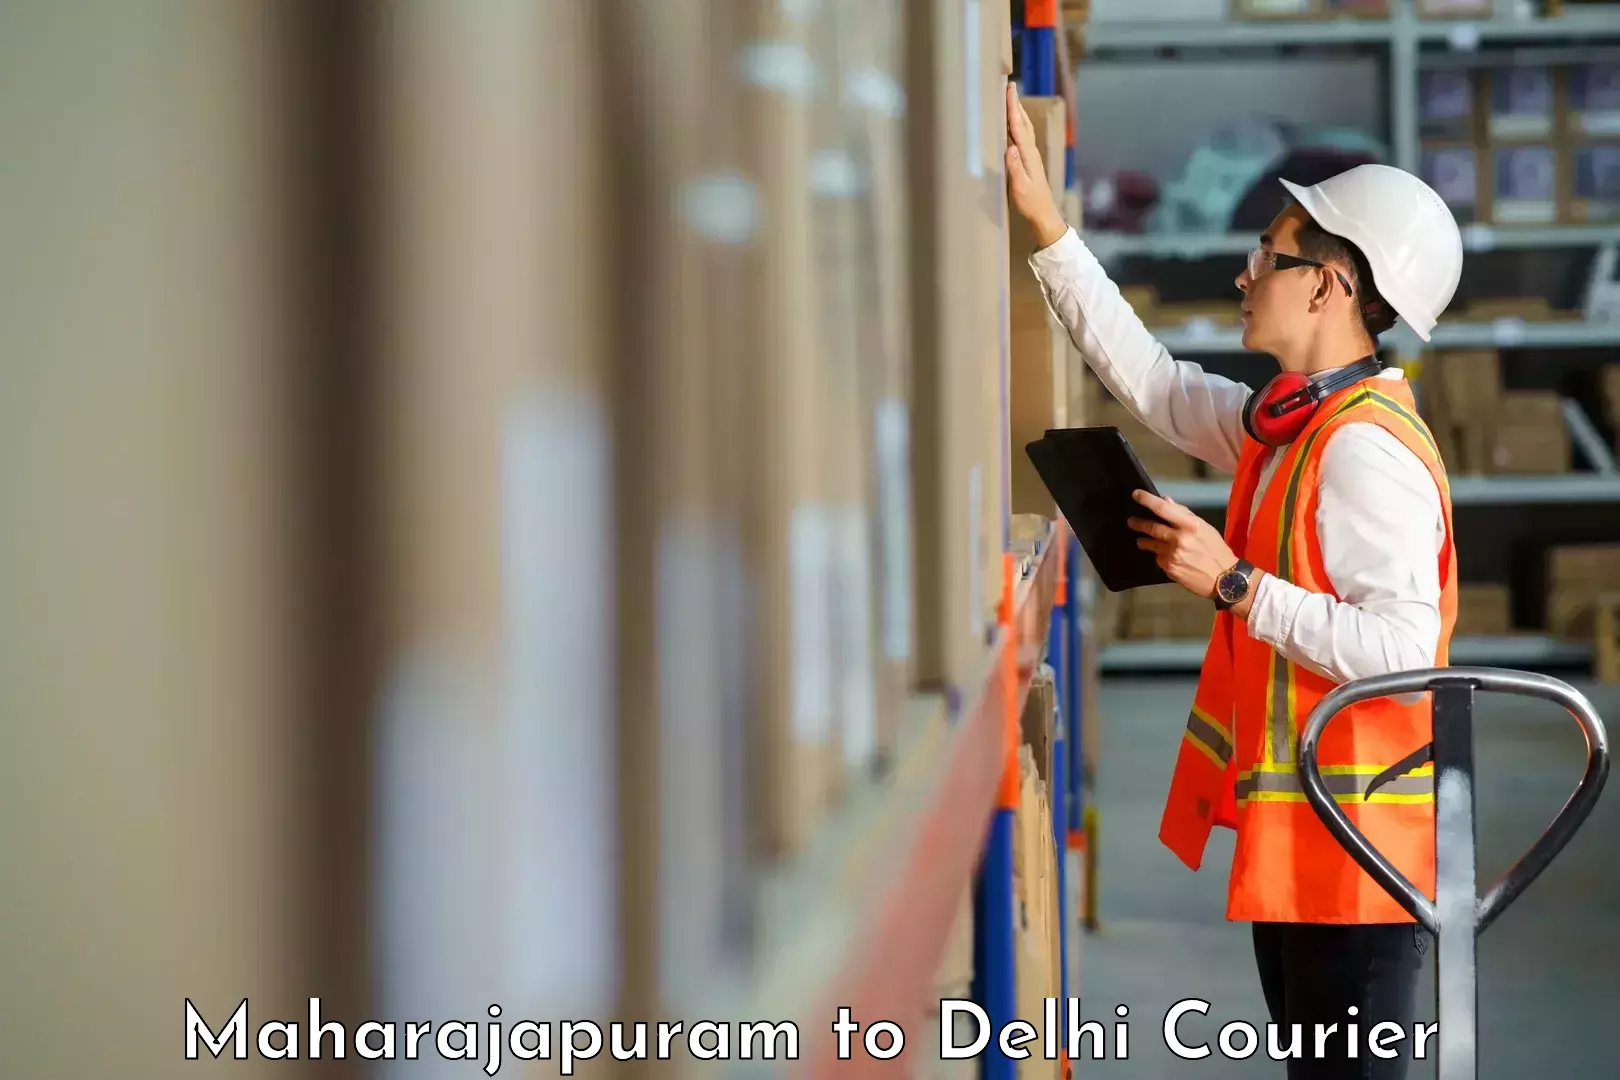 High-capacity courier solutions Maharajapuram to NCR